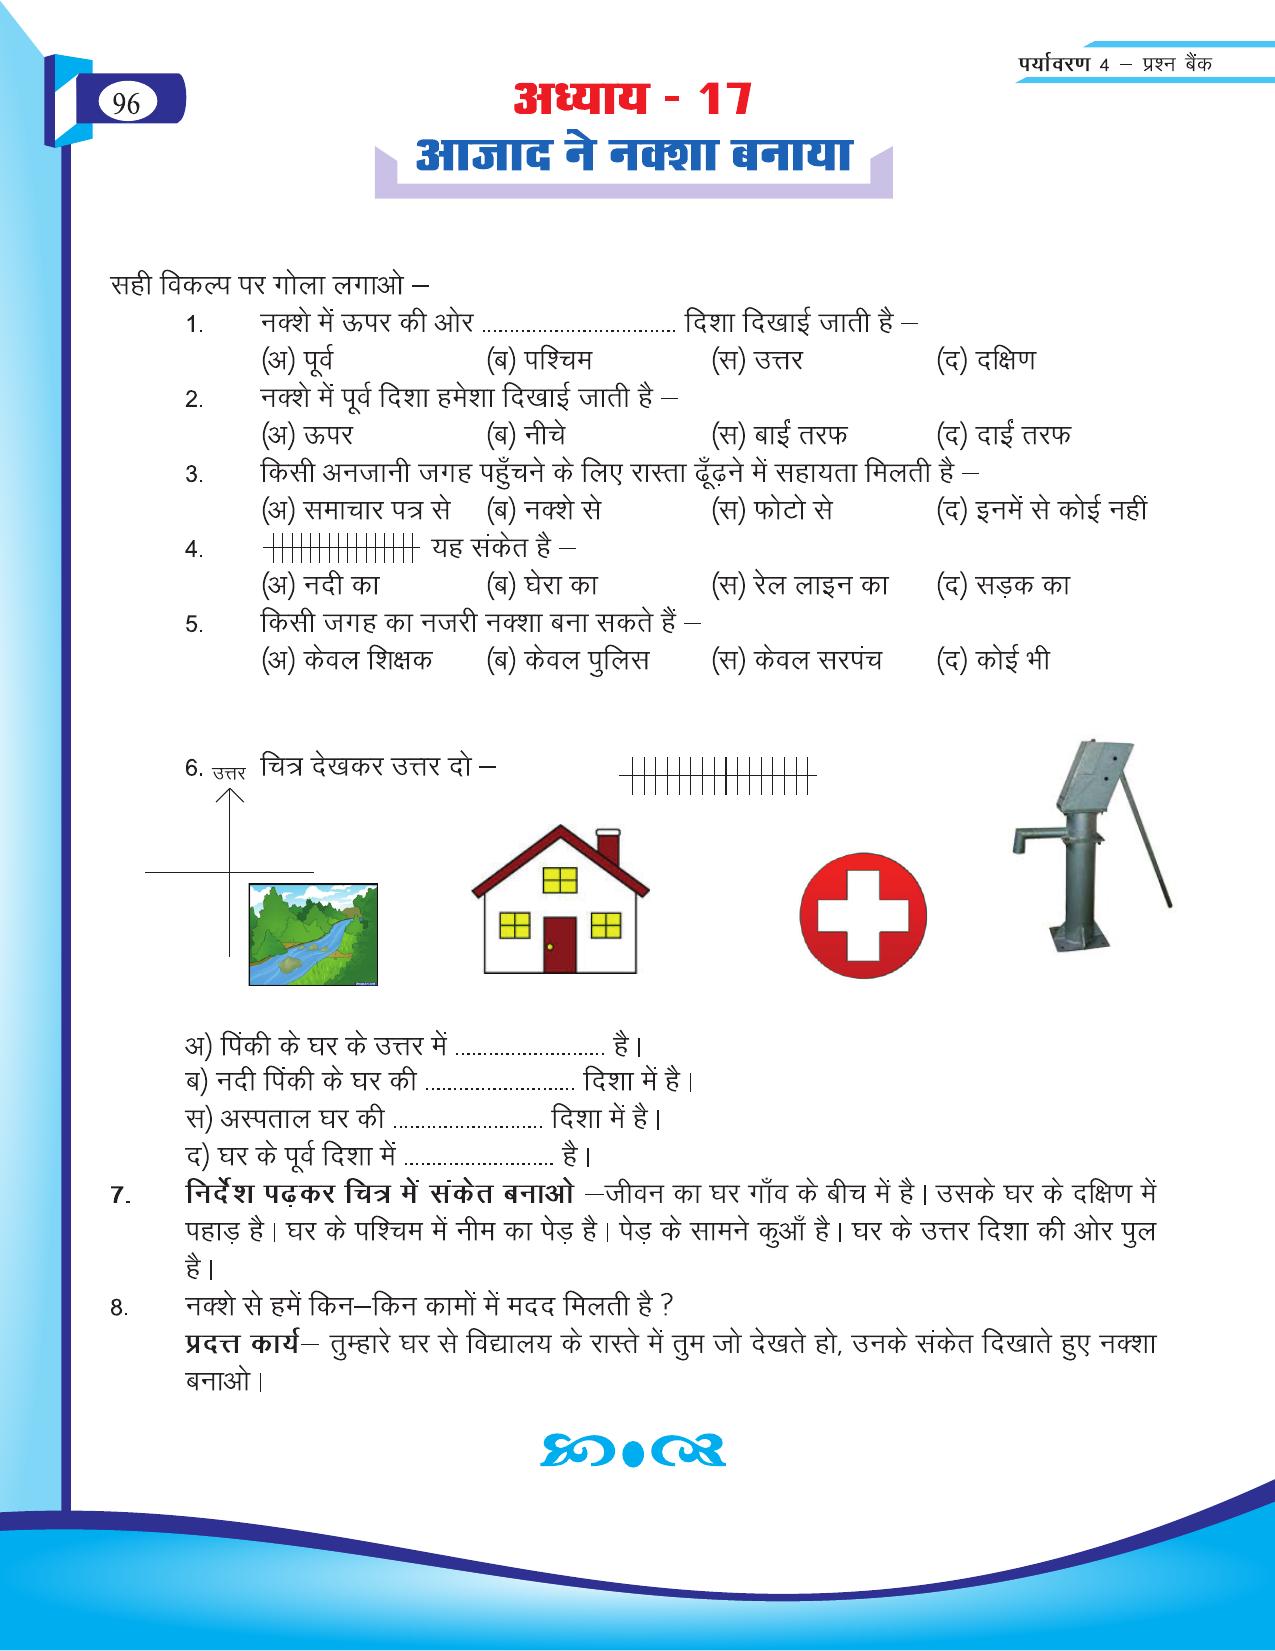 Chhattisgarh Board Class 4 EVS Question Bank 2015-16 - Page 25